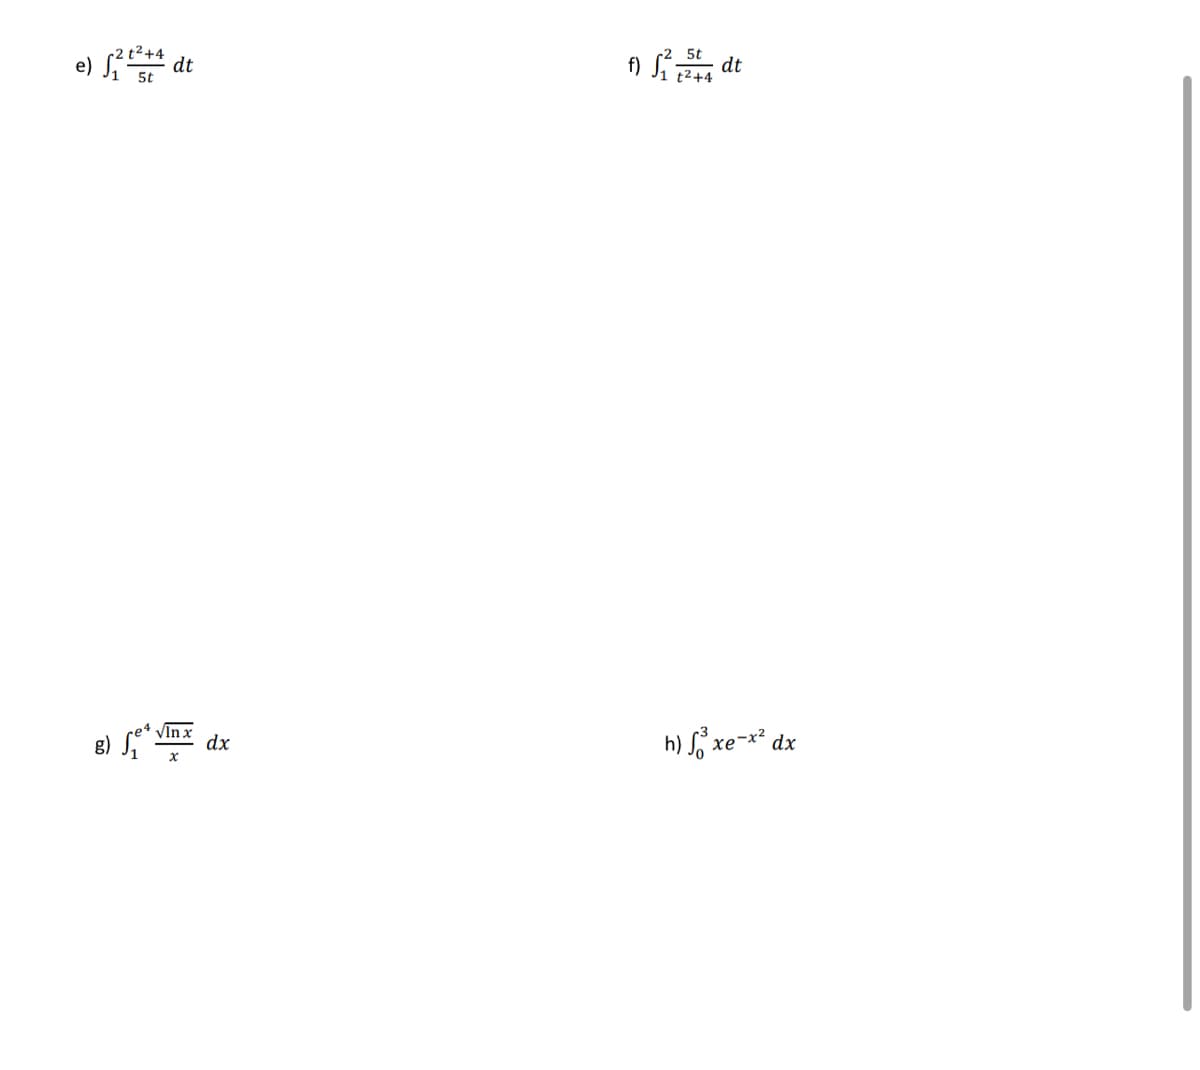 e) √2²² +4 + dt
5t
vlnx
B) d.
se² dx
f) 5² dt
t²+4
h) ³² x
xe-12
dx